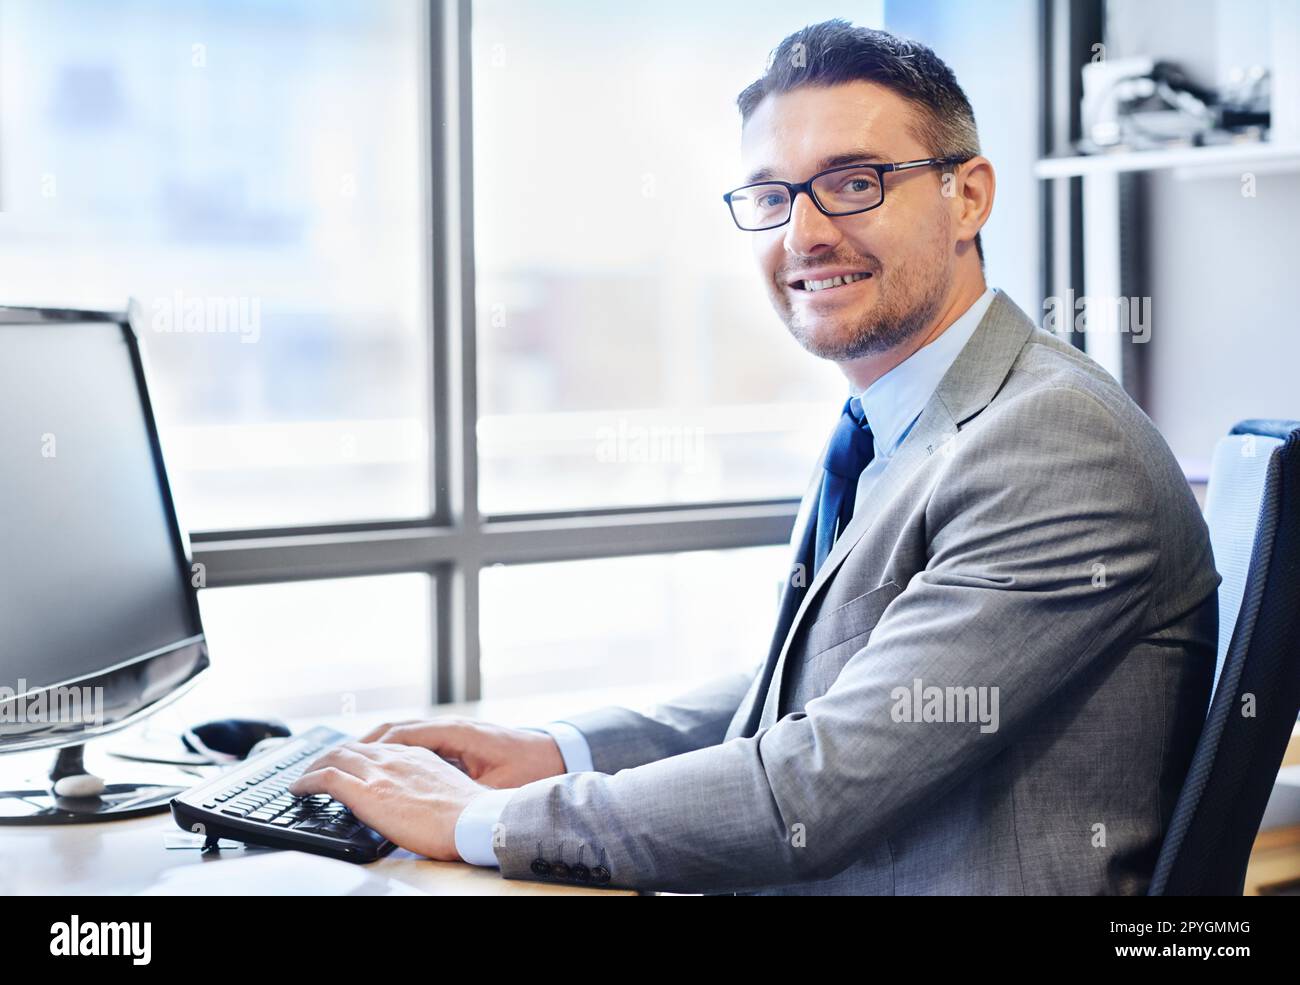 HES ha una grande etica di lavoro. Ritratto di un uomo d'affari sorridente al lavoro nel suo ufficio. Foto Stock